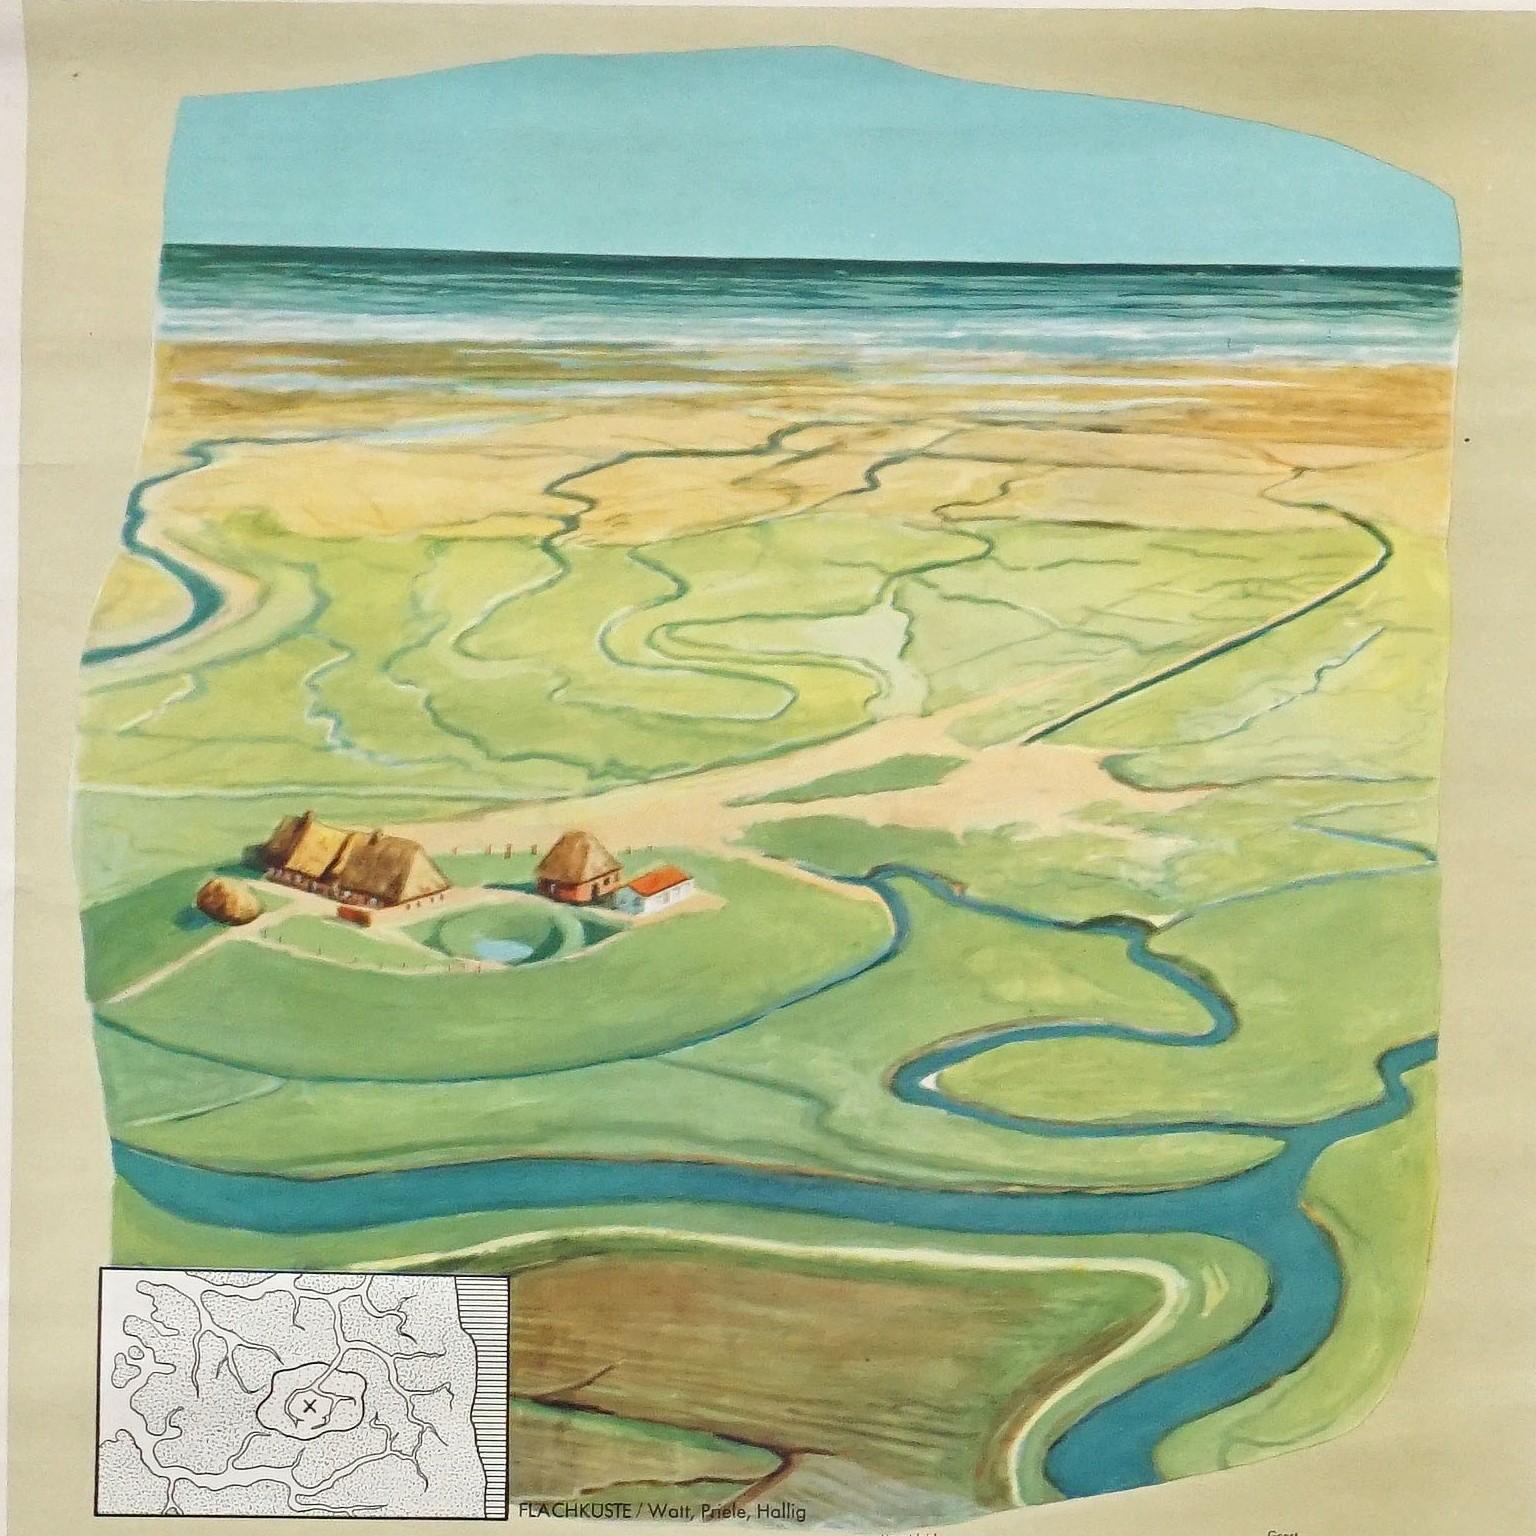 La peinture murale vintage à dérouler illustre les grandes et petites formes géologiques de la surface de la terre avec la côte plate, la côte escarpée, l'île volcanique, le fjord et les icebergs. Maison d'édition Tellus, Esslingen. Impression